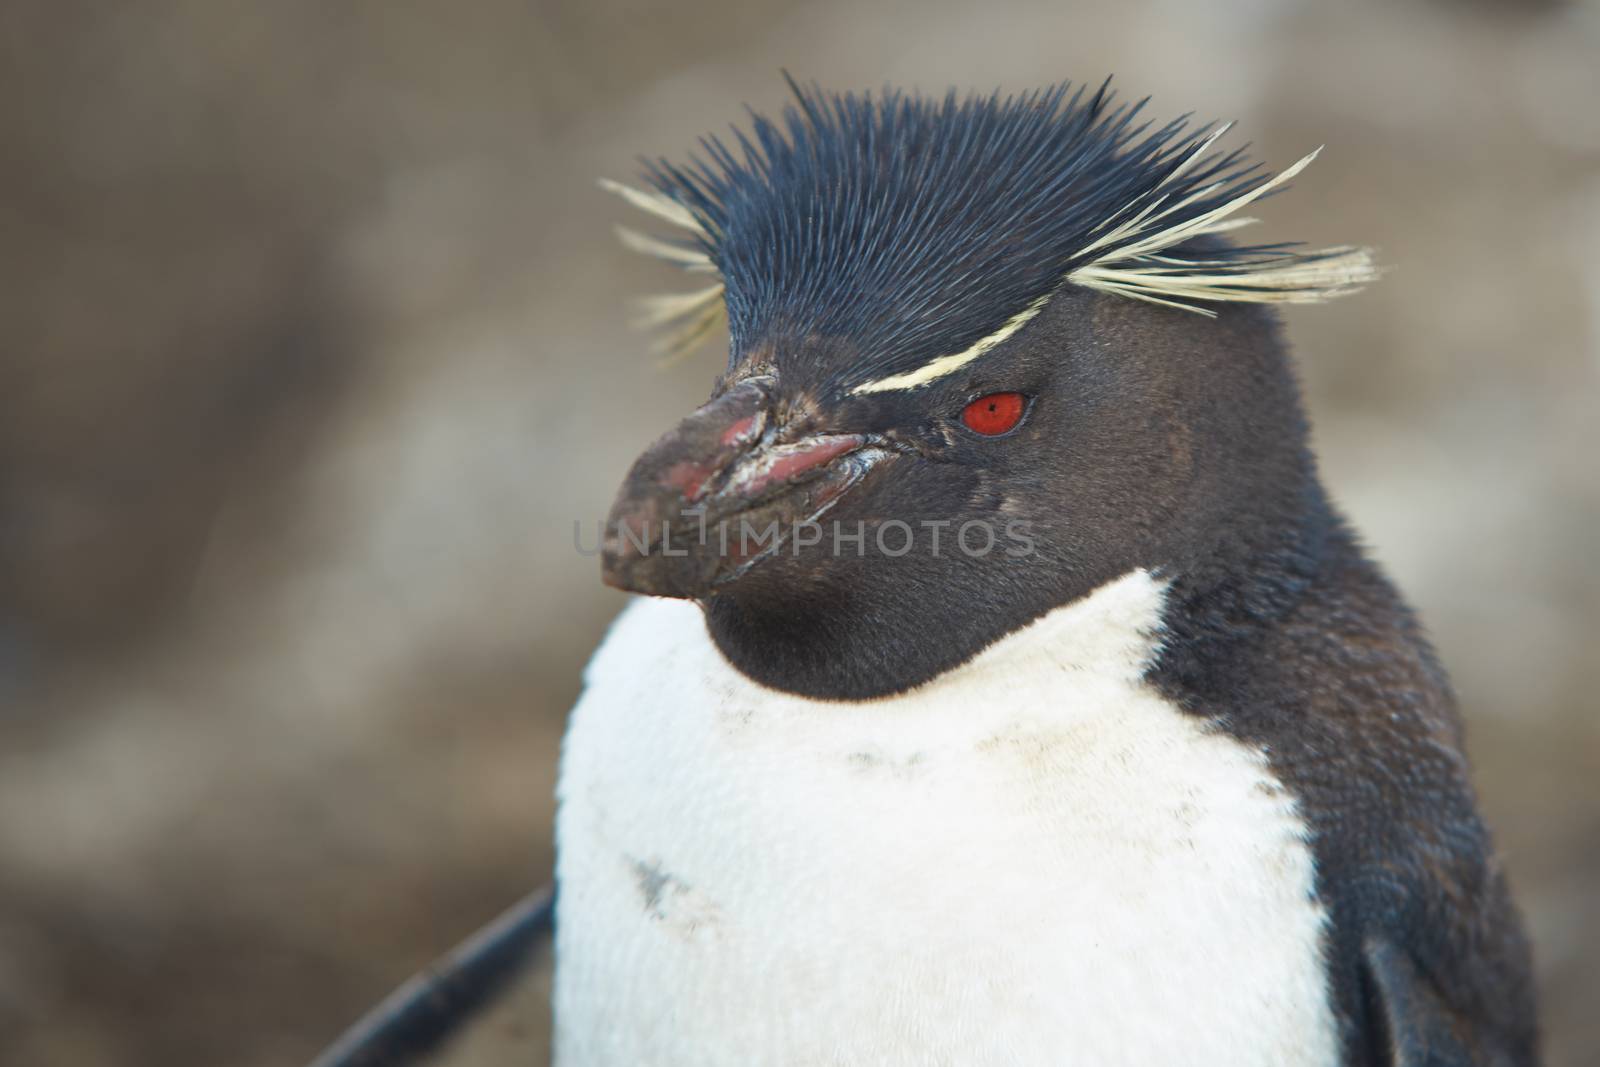 Rockhopper Penguin by JeremyRichards